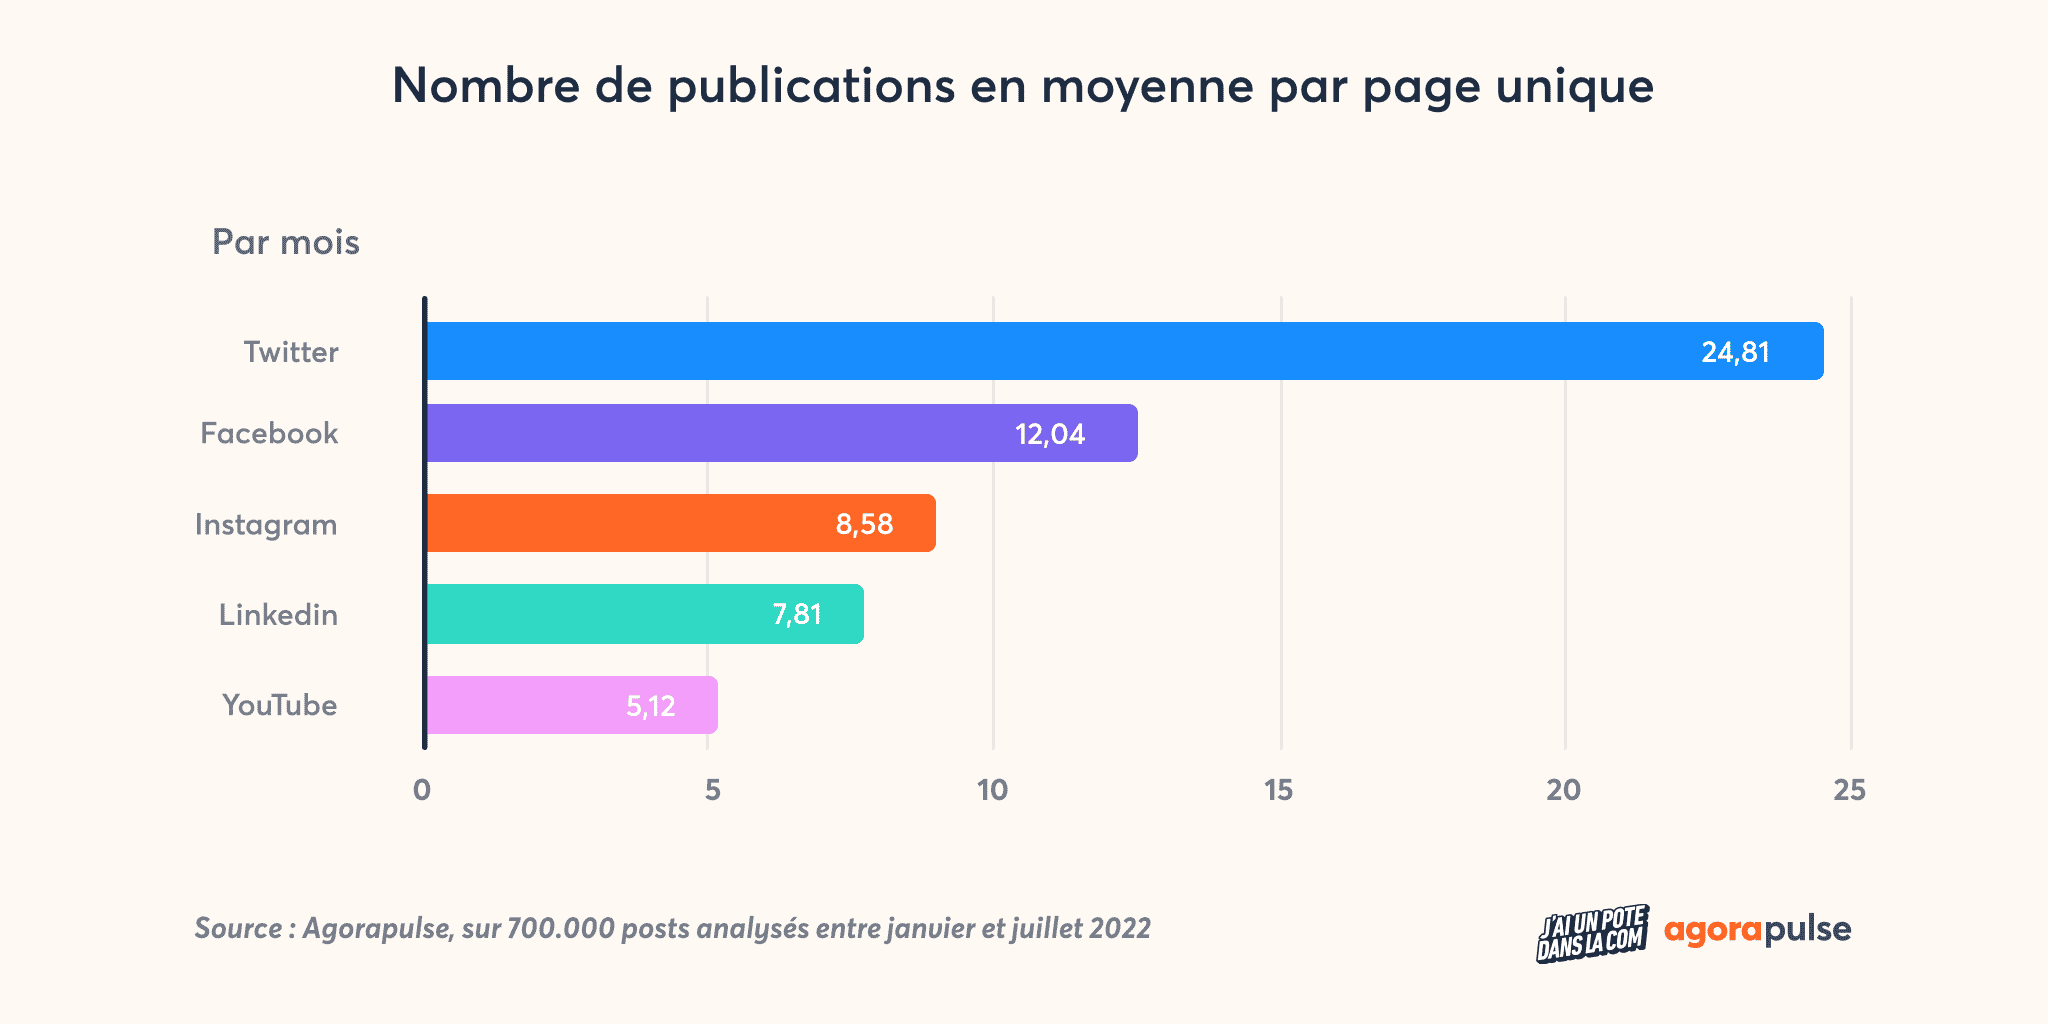 Nombre de publications en moyenne par page unique - Etude agences 2022